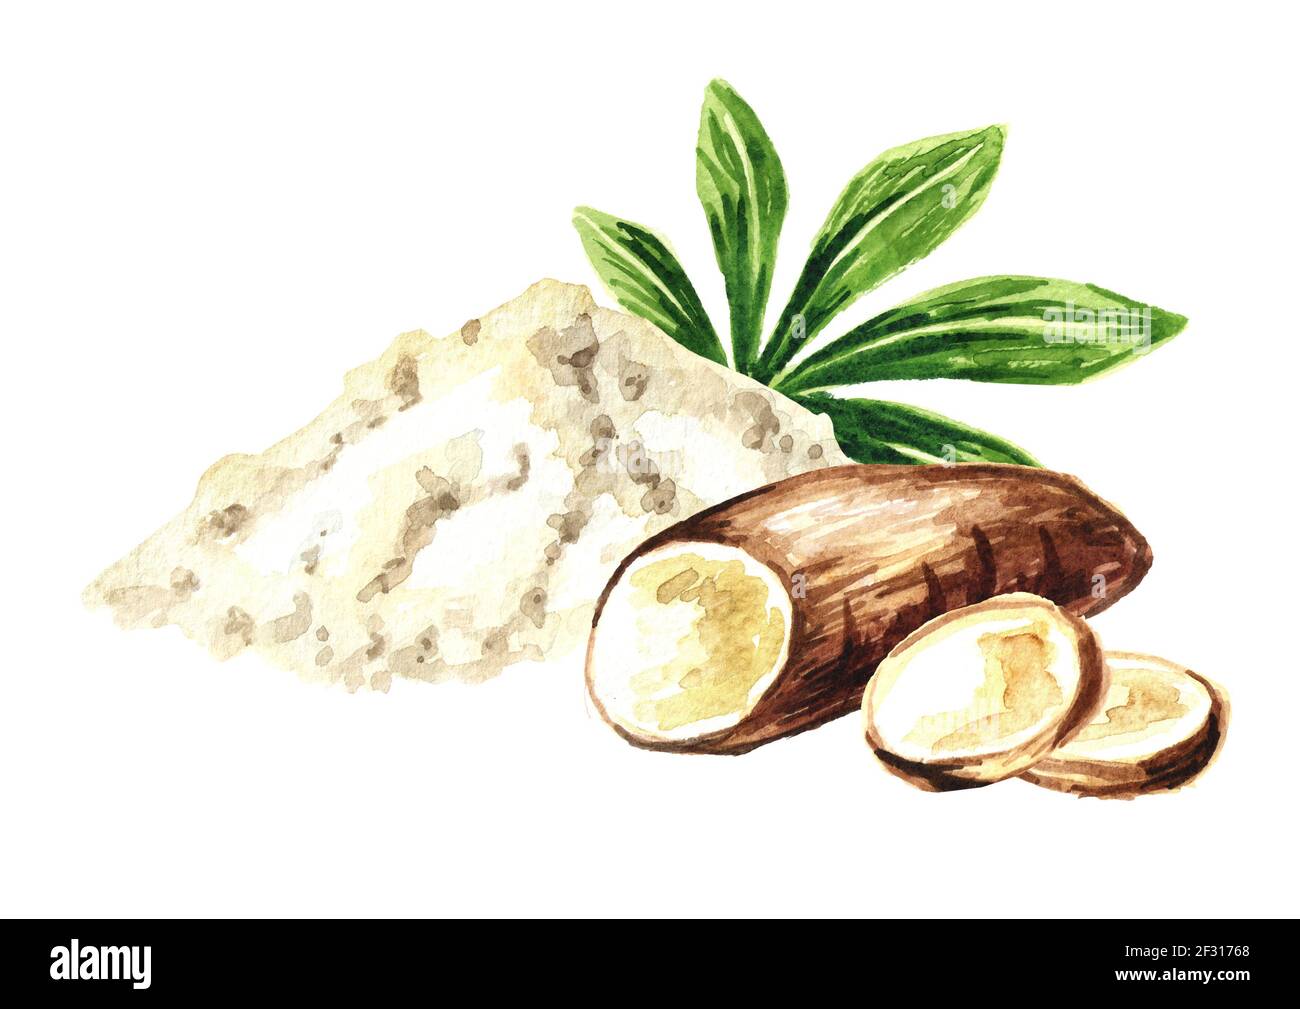 Radice di manioca, polvere. Esculenta Manihot. Immagine disegnata a mano con acquerello, isolata su sfondo bianco Foto Stock